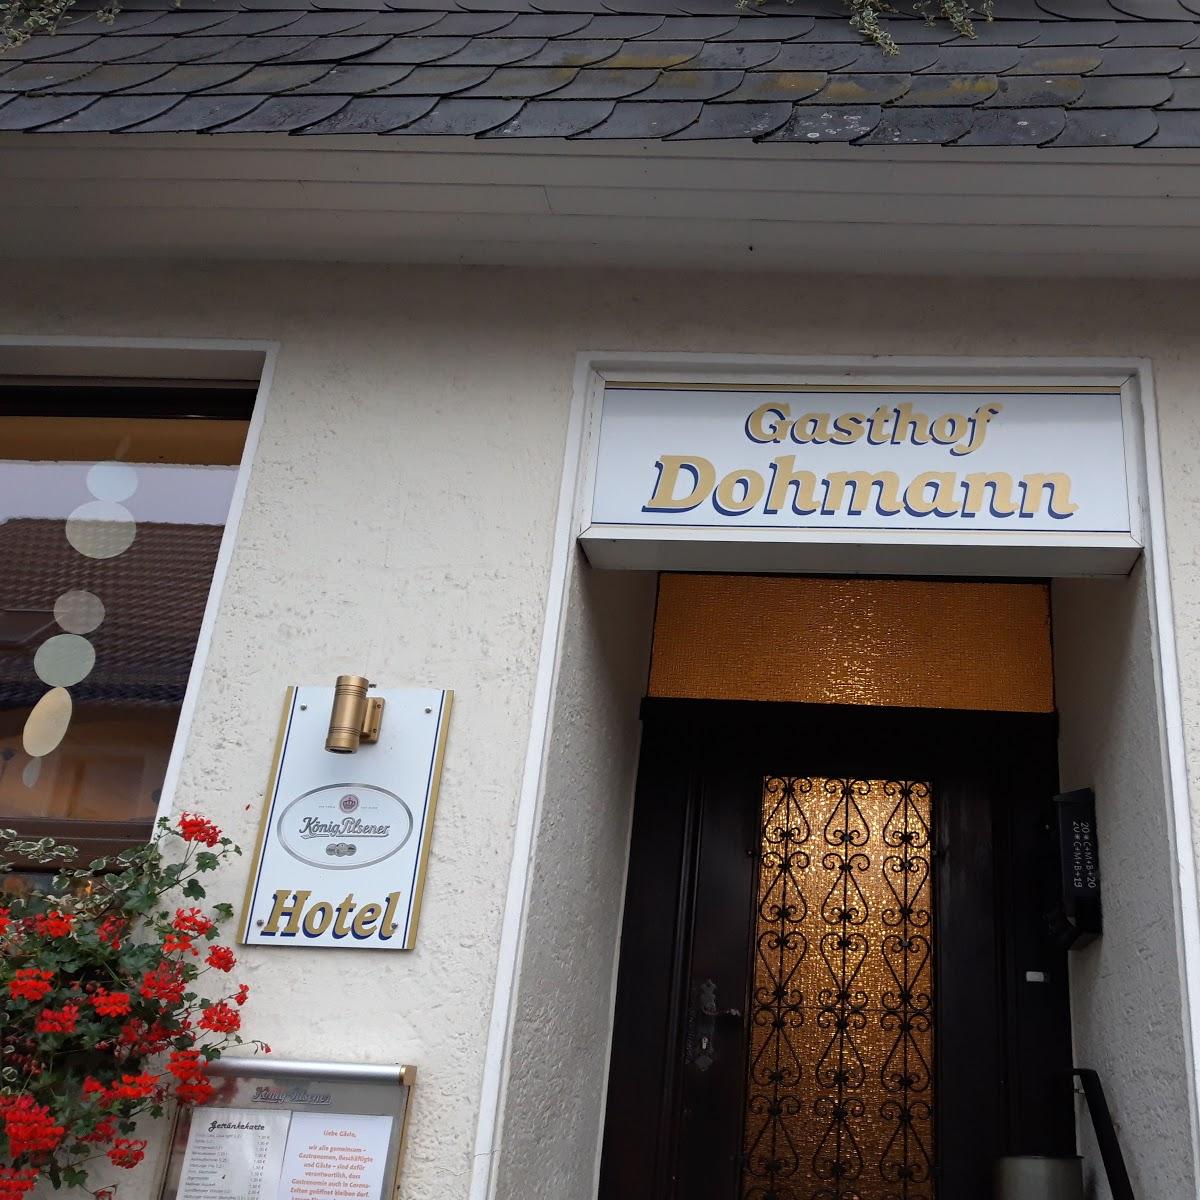 Restaurant "Hotel Gasthof Dohmann" in Borgentreich